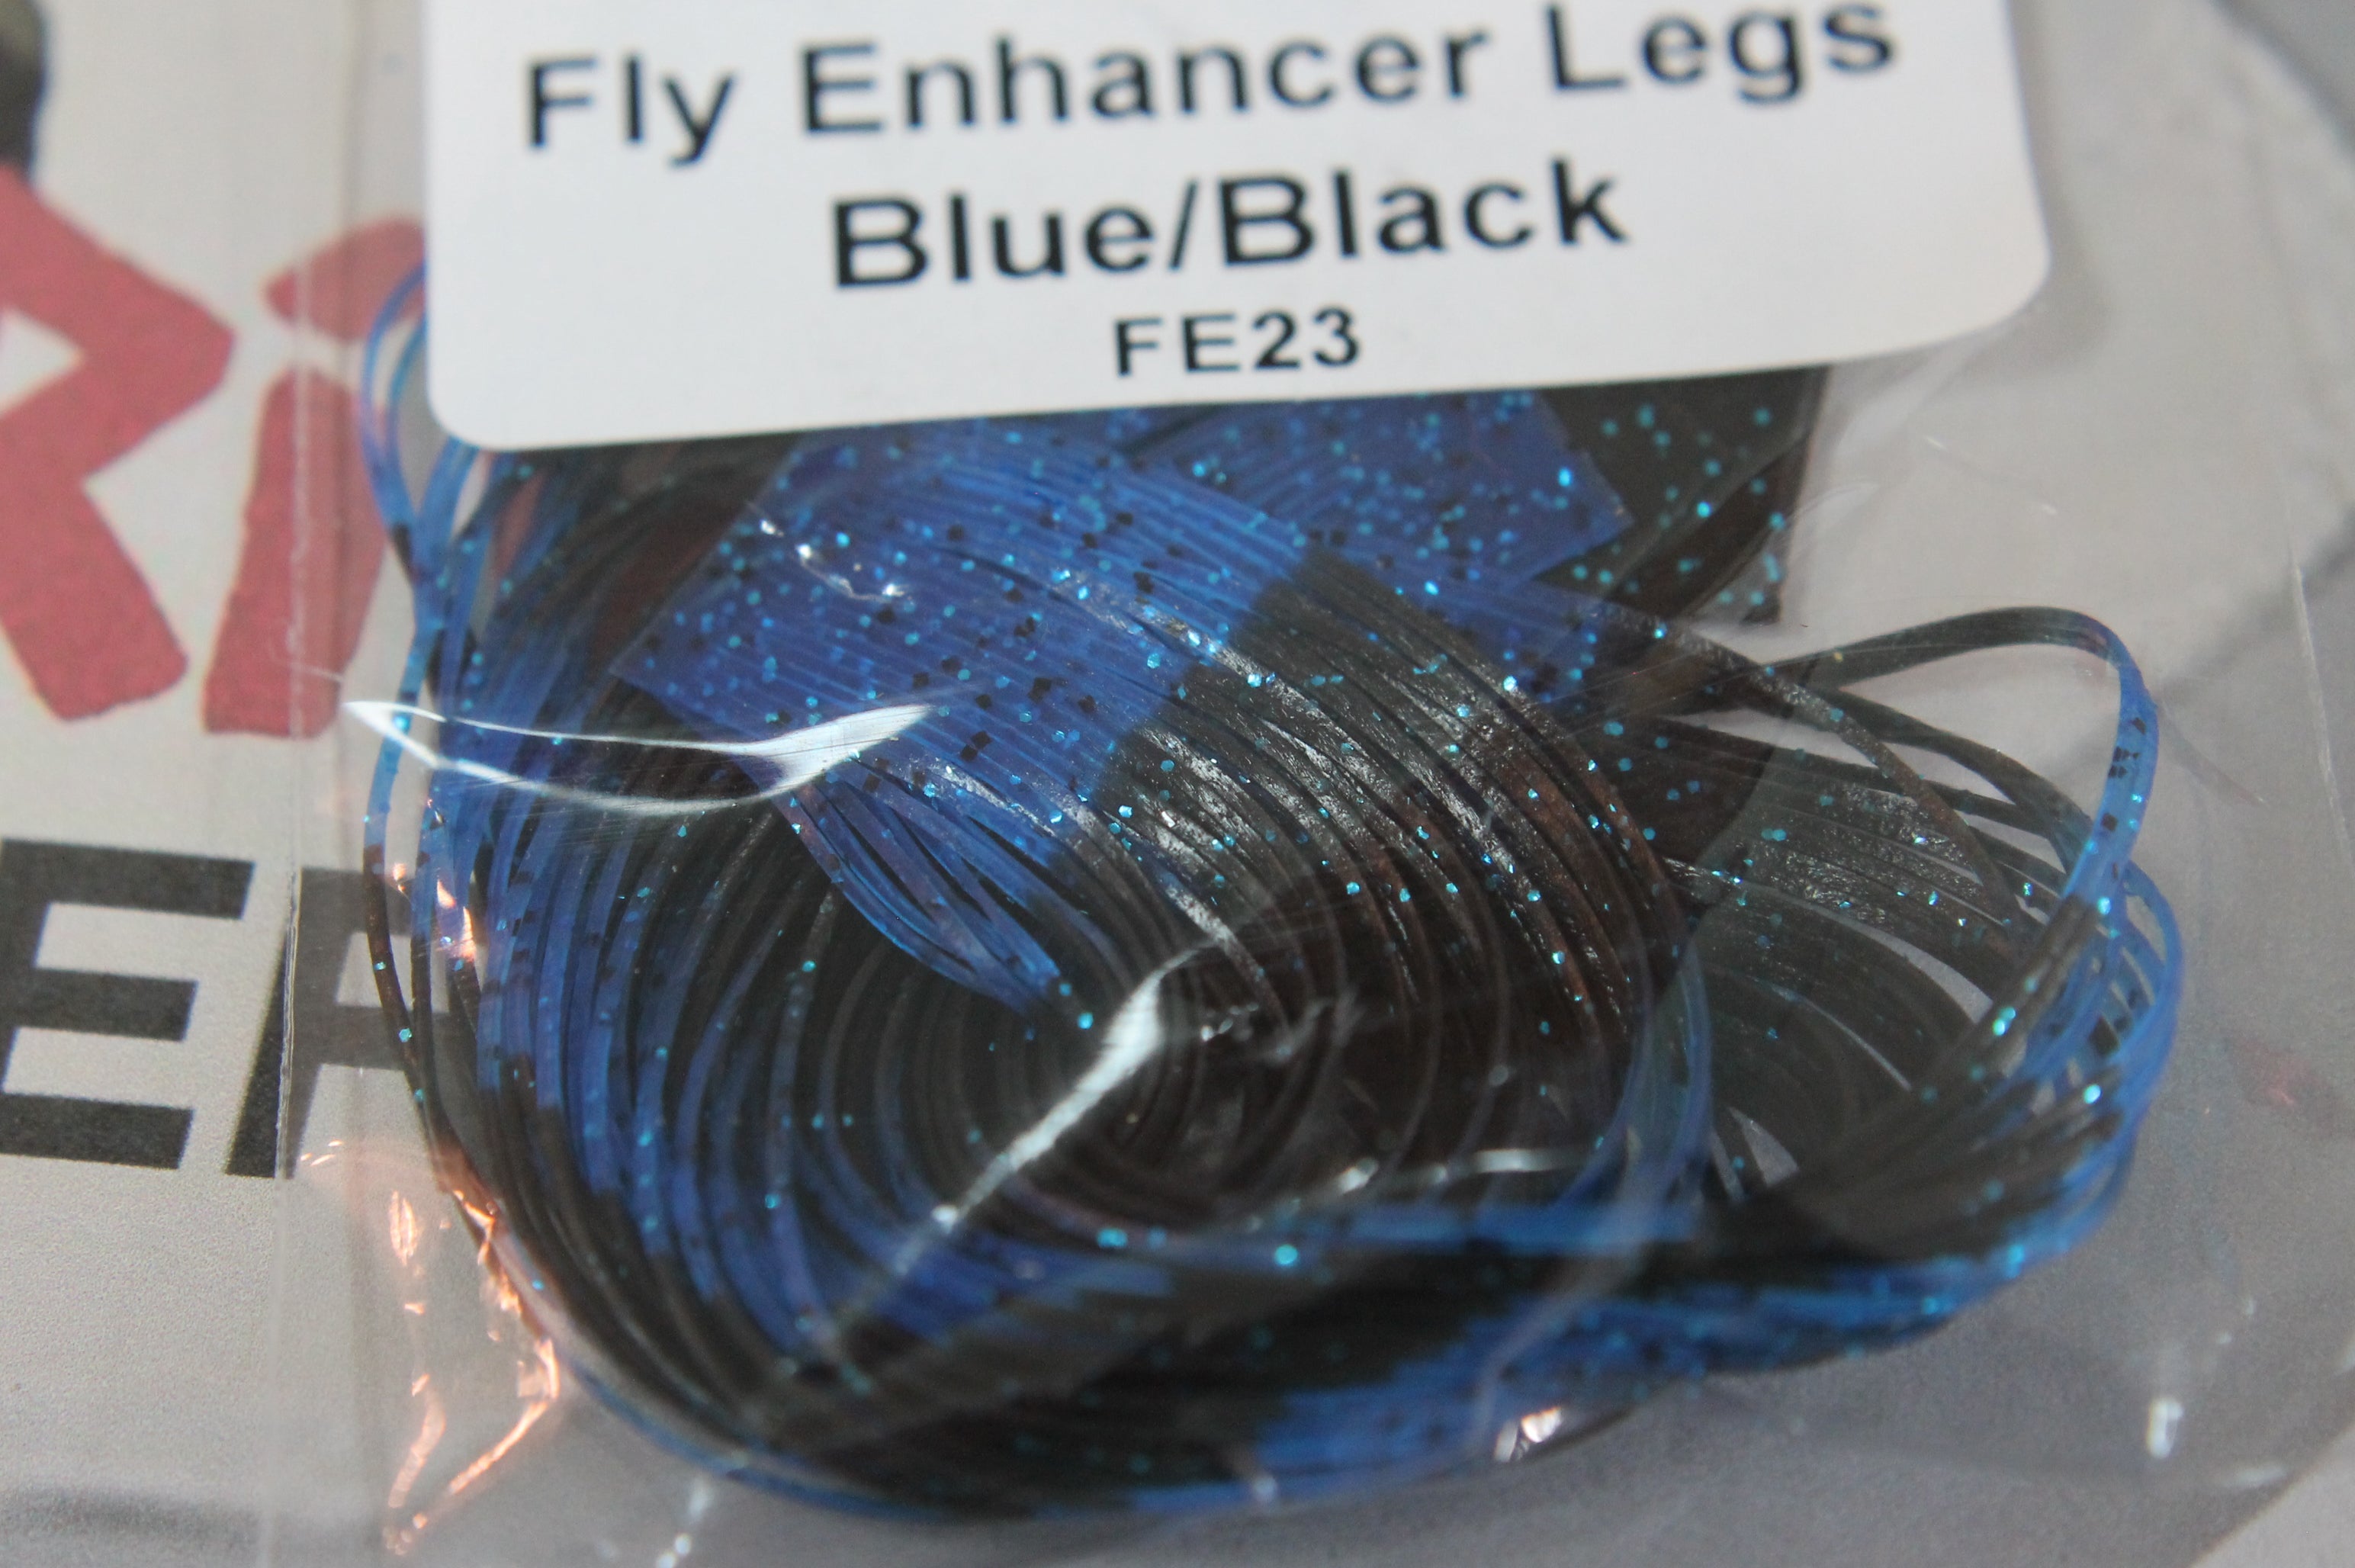 Fly Enhancer Legs